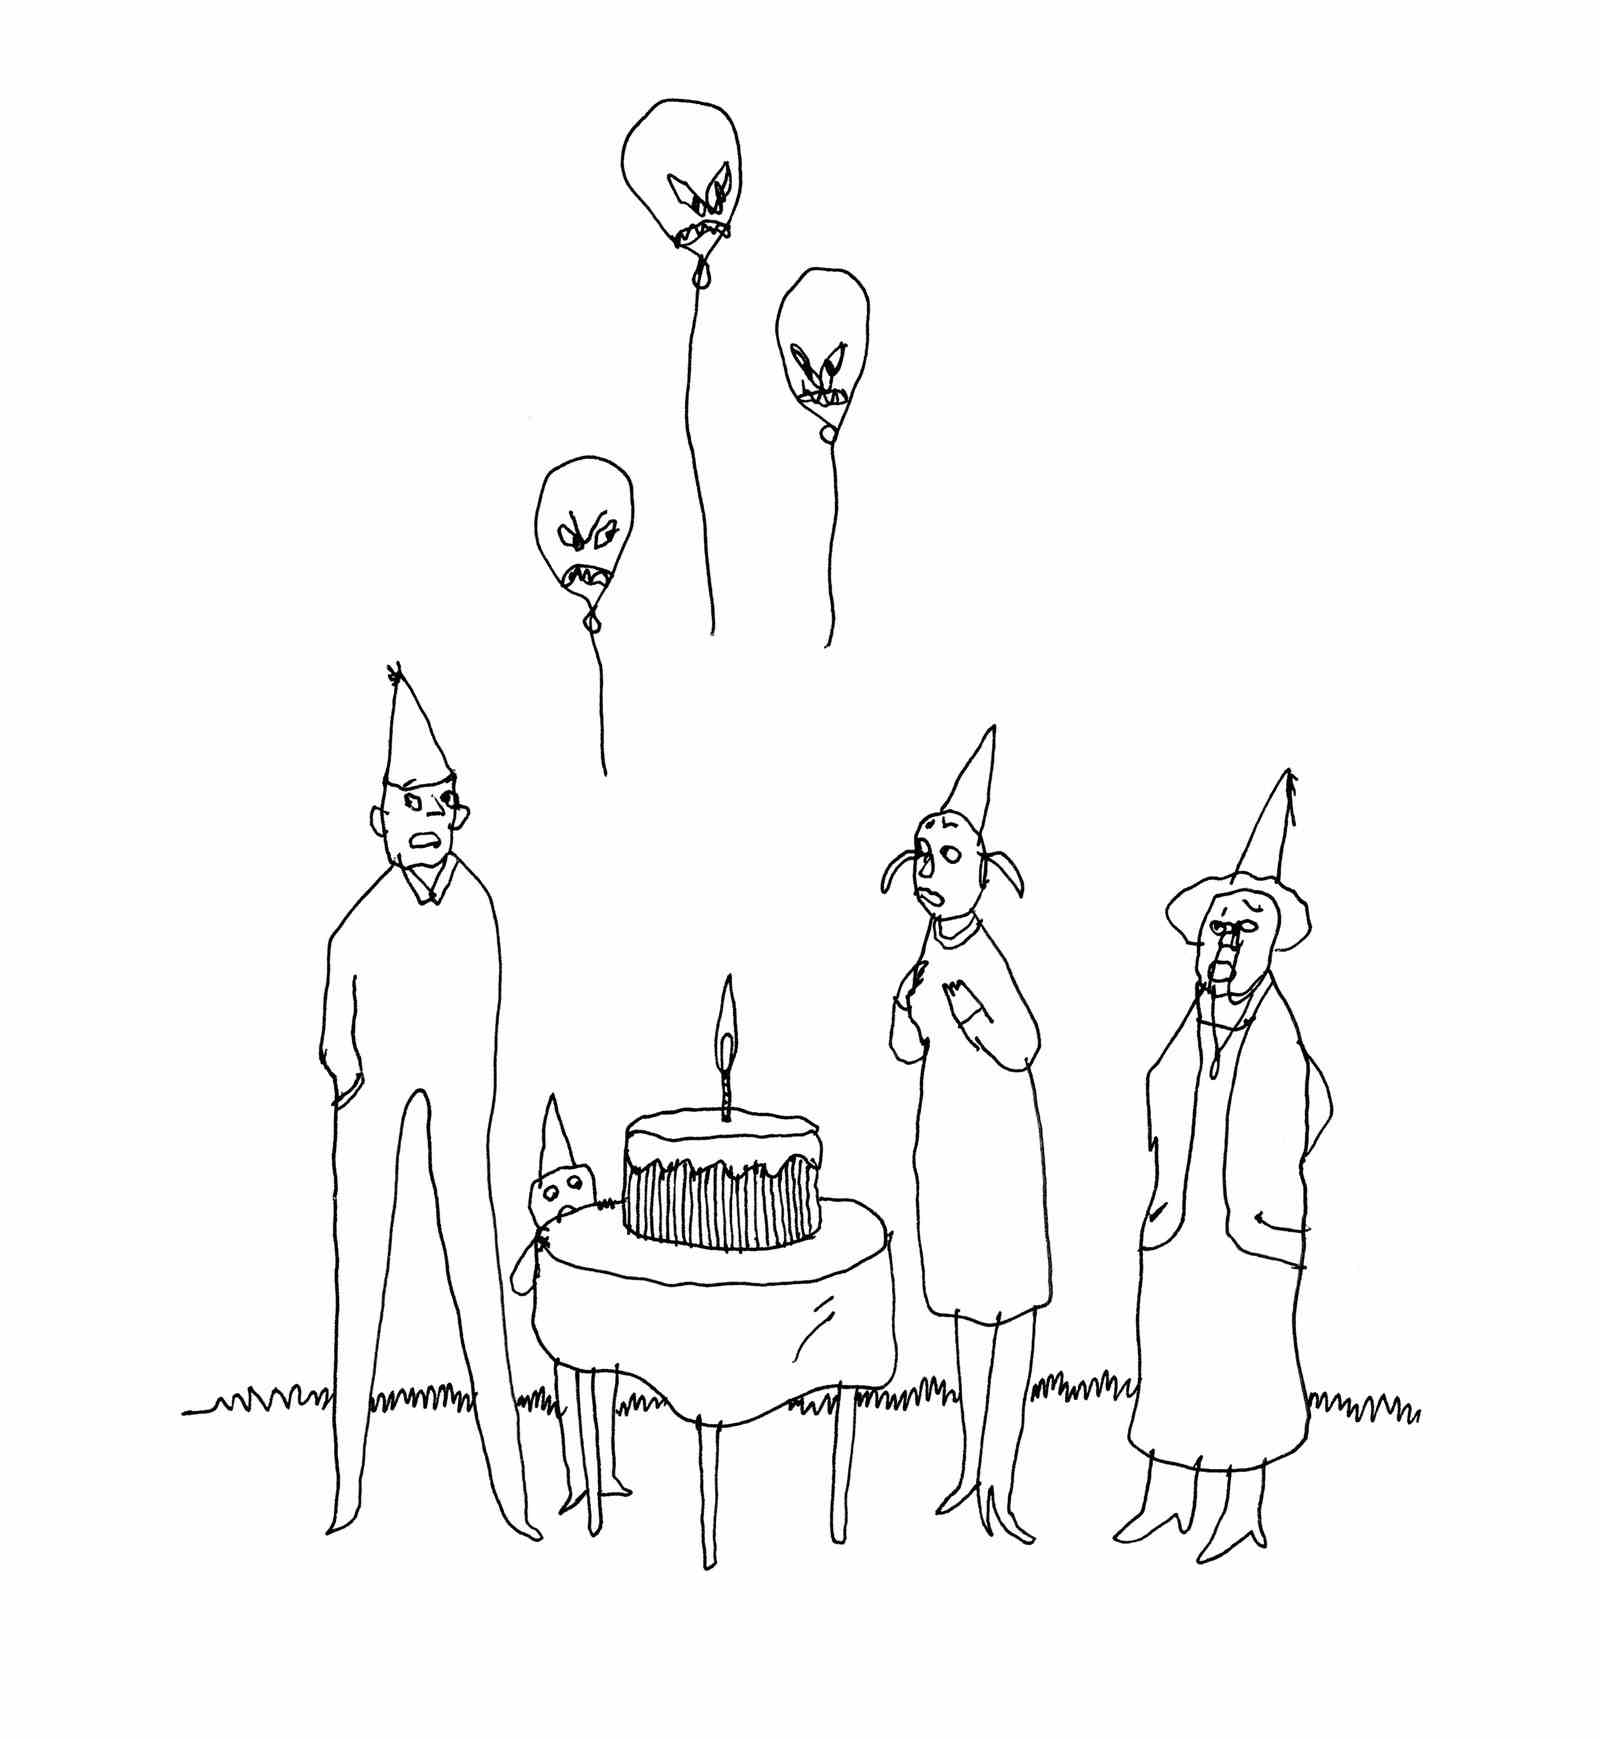 Menschen mit Partyhüten stehen um einen Kuchen herum.